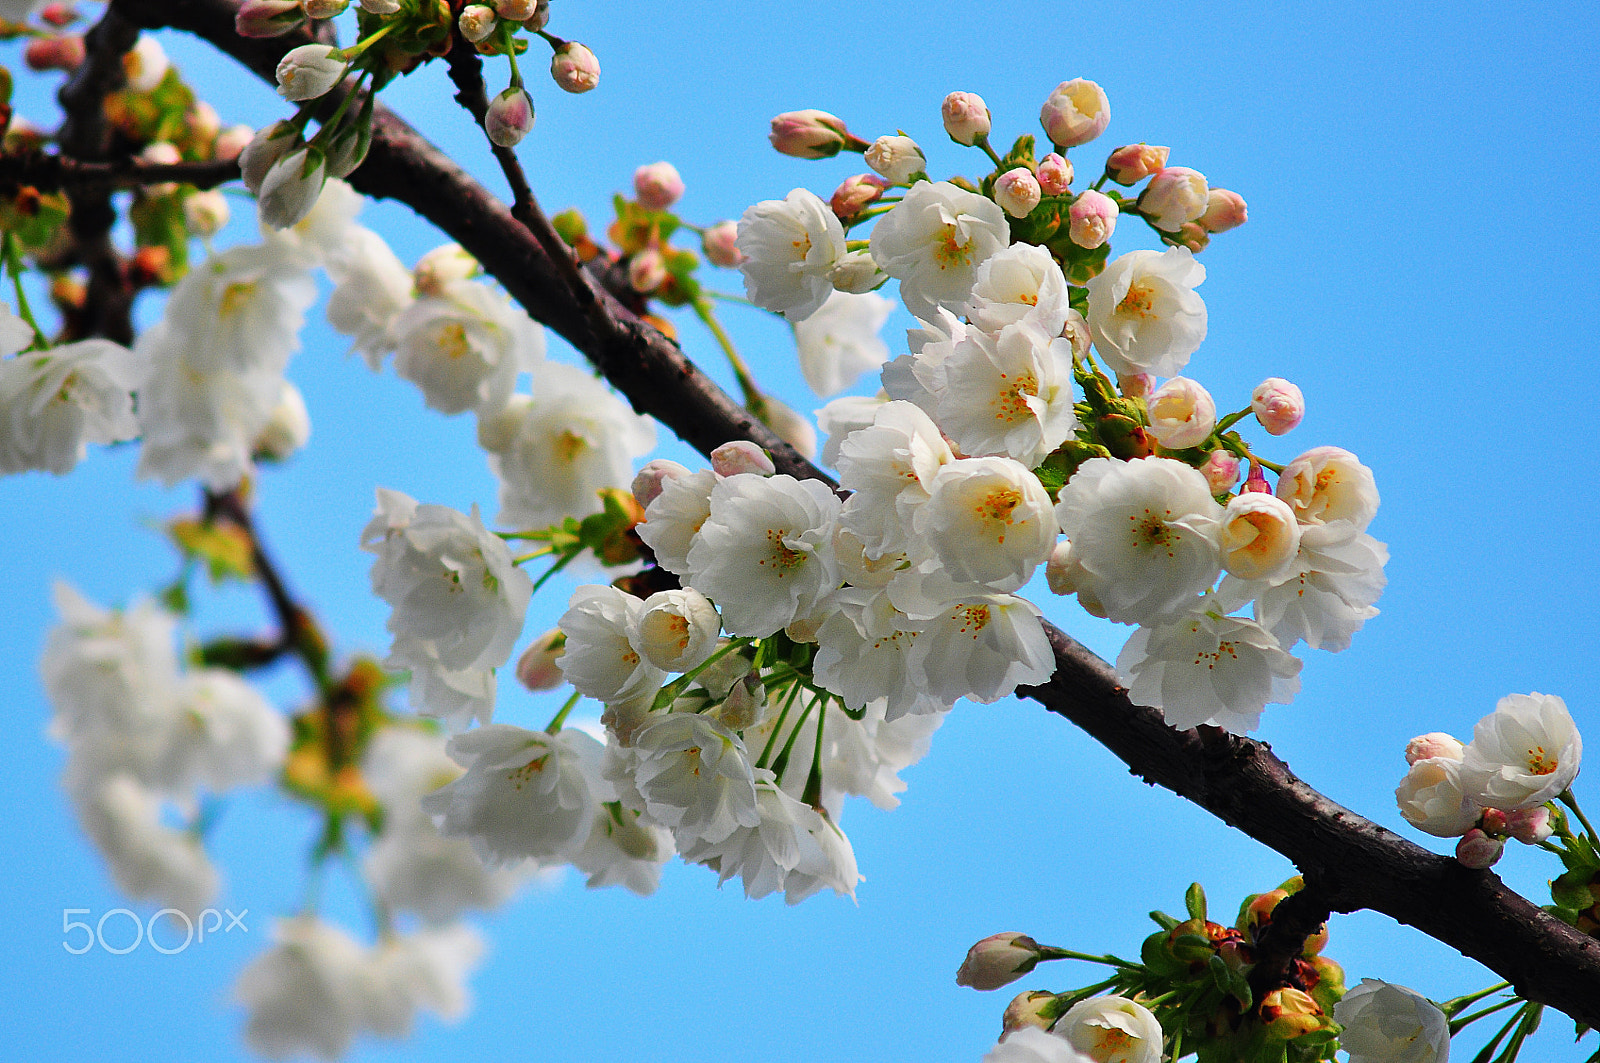 Nikon D90 + AF Zoom-Nikkor 75-300mm f/4.5-5.6 sample photo. Spring cherry blossom photography